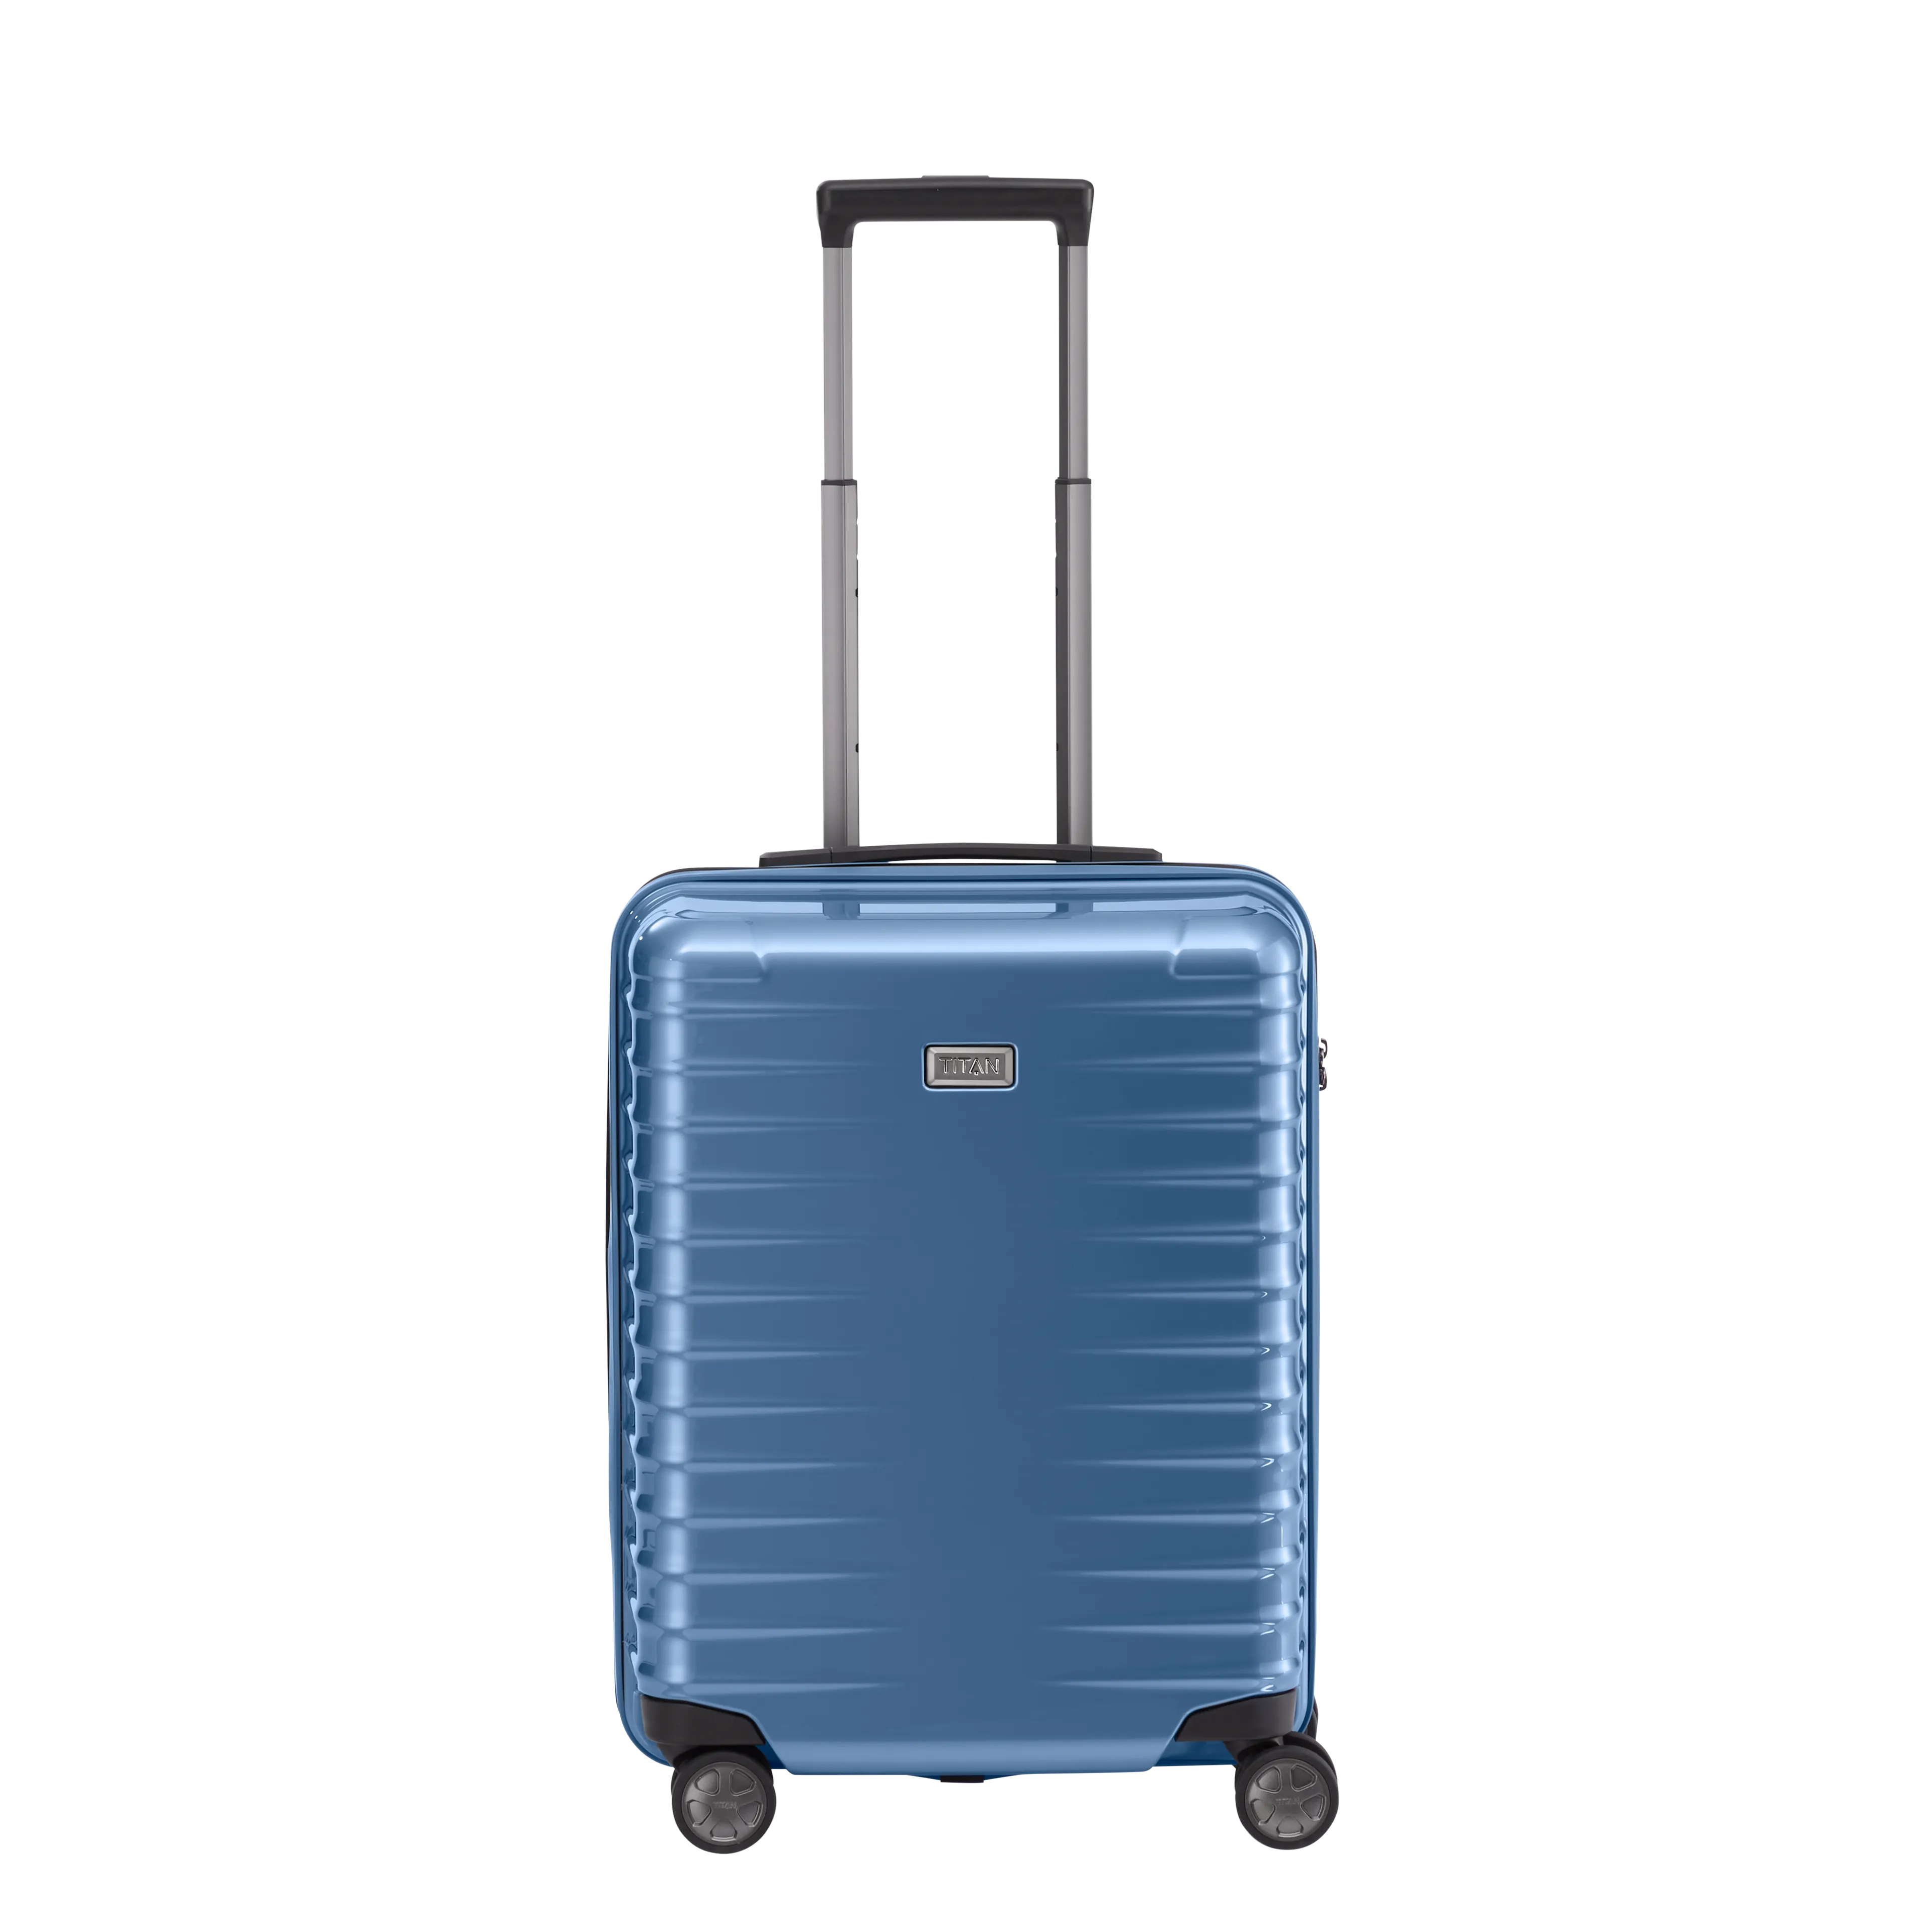 Ein TITAN Koffer der Serie LITRON Frontansicht in eisblau Größe S 55cm